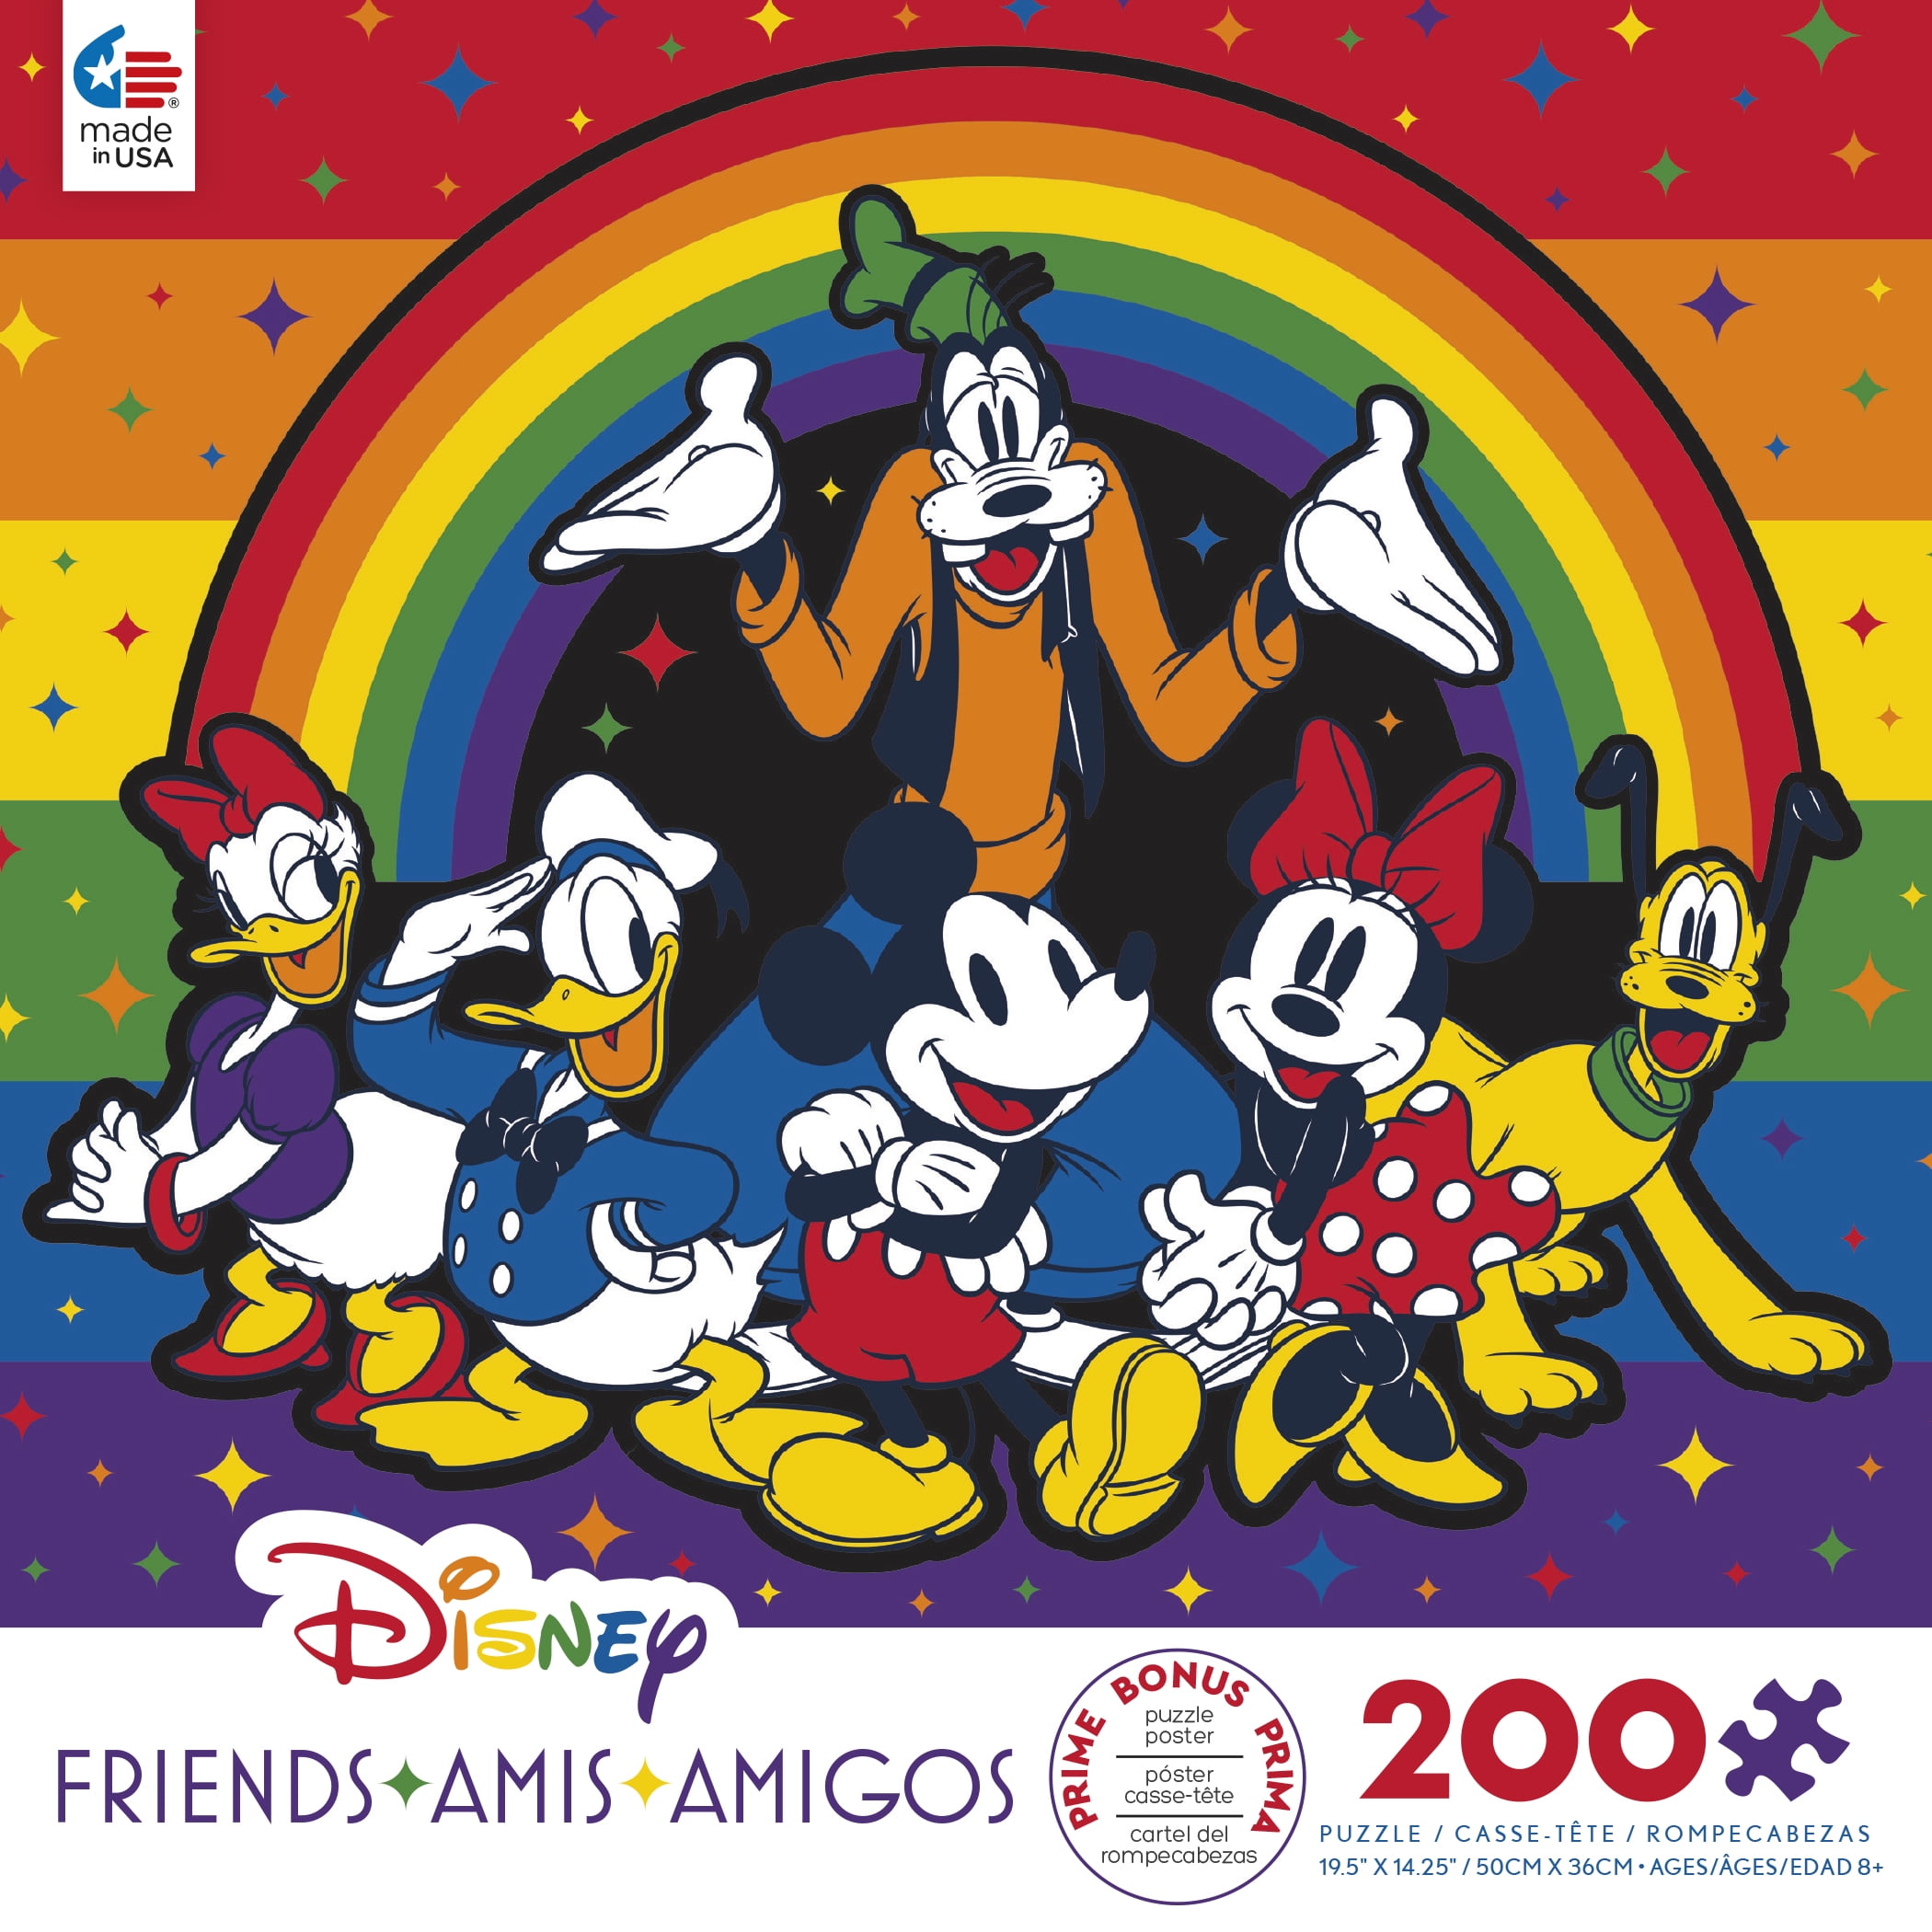 Ceaco - Disney - Rainbow Friends - 200 Piece Kids Oversized Jigsaw Puzzle 